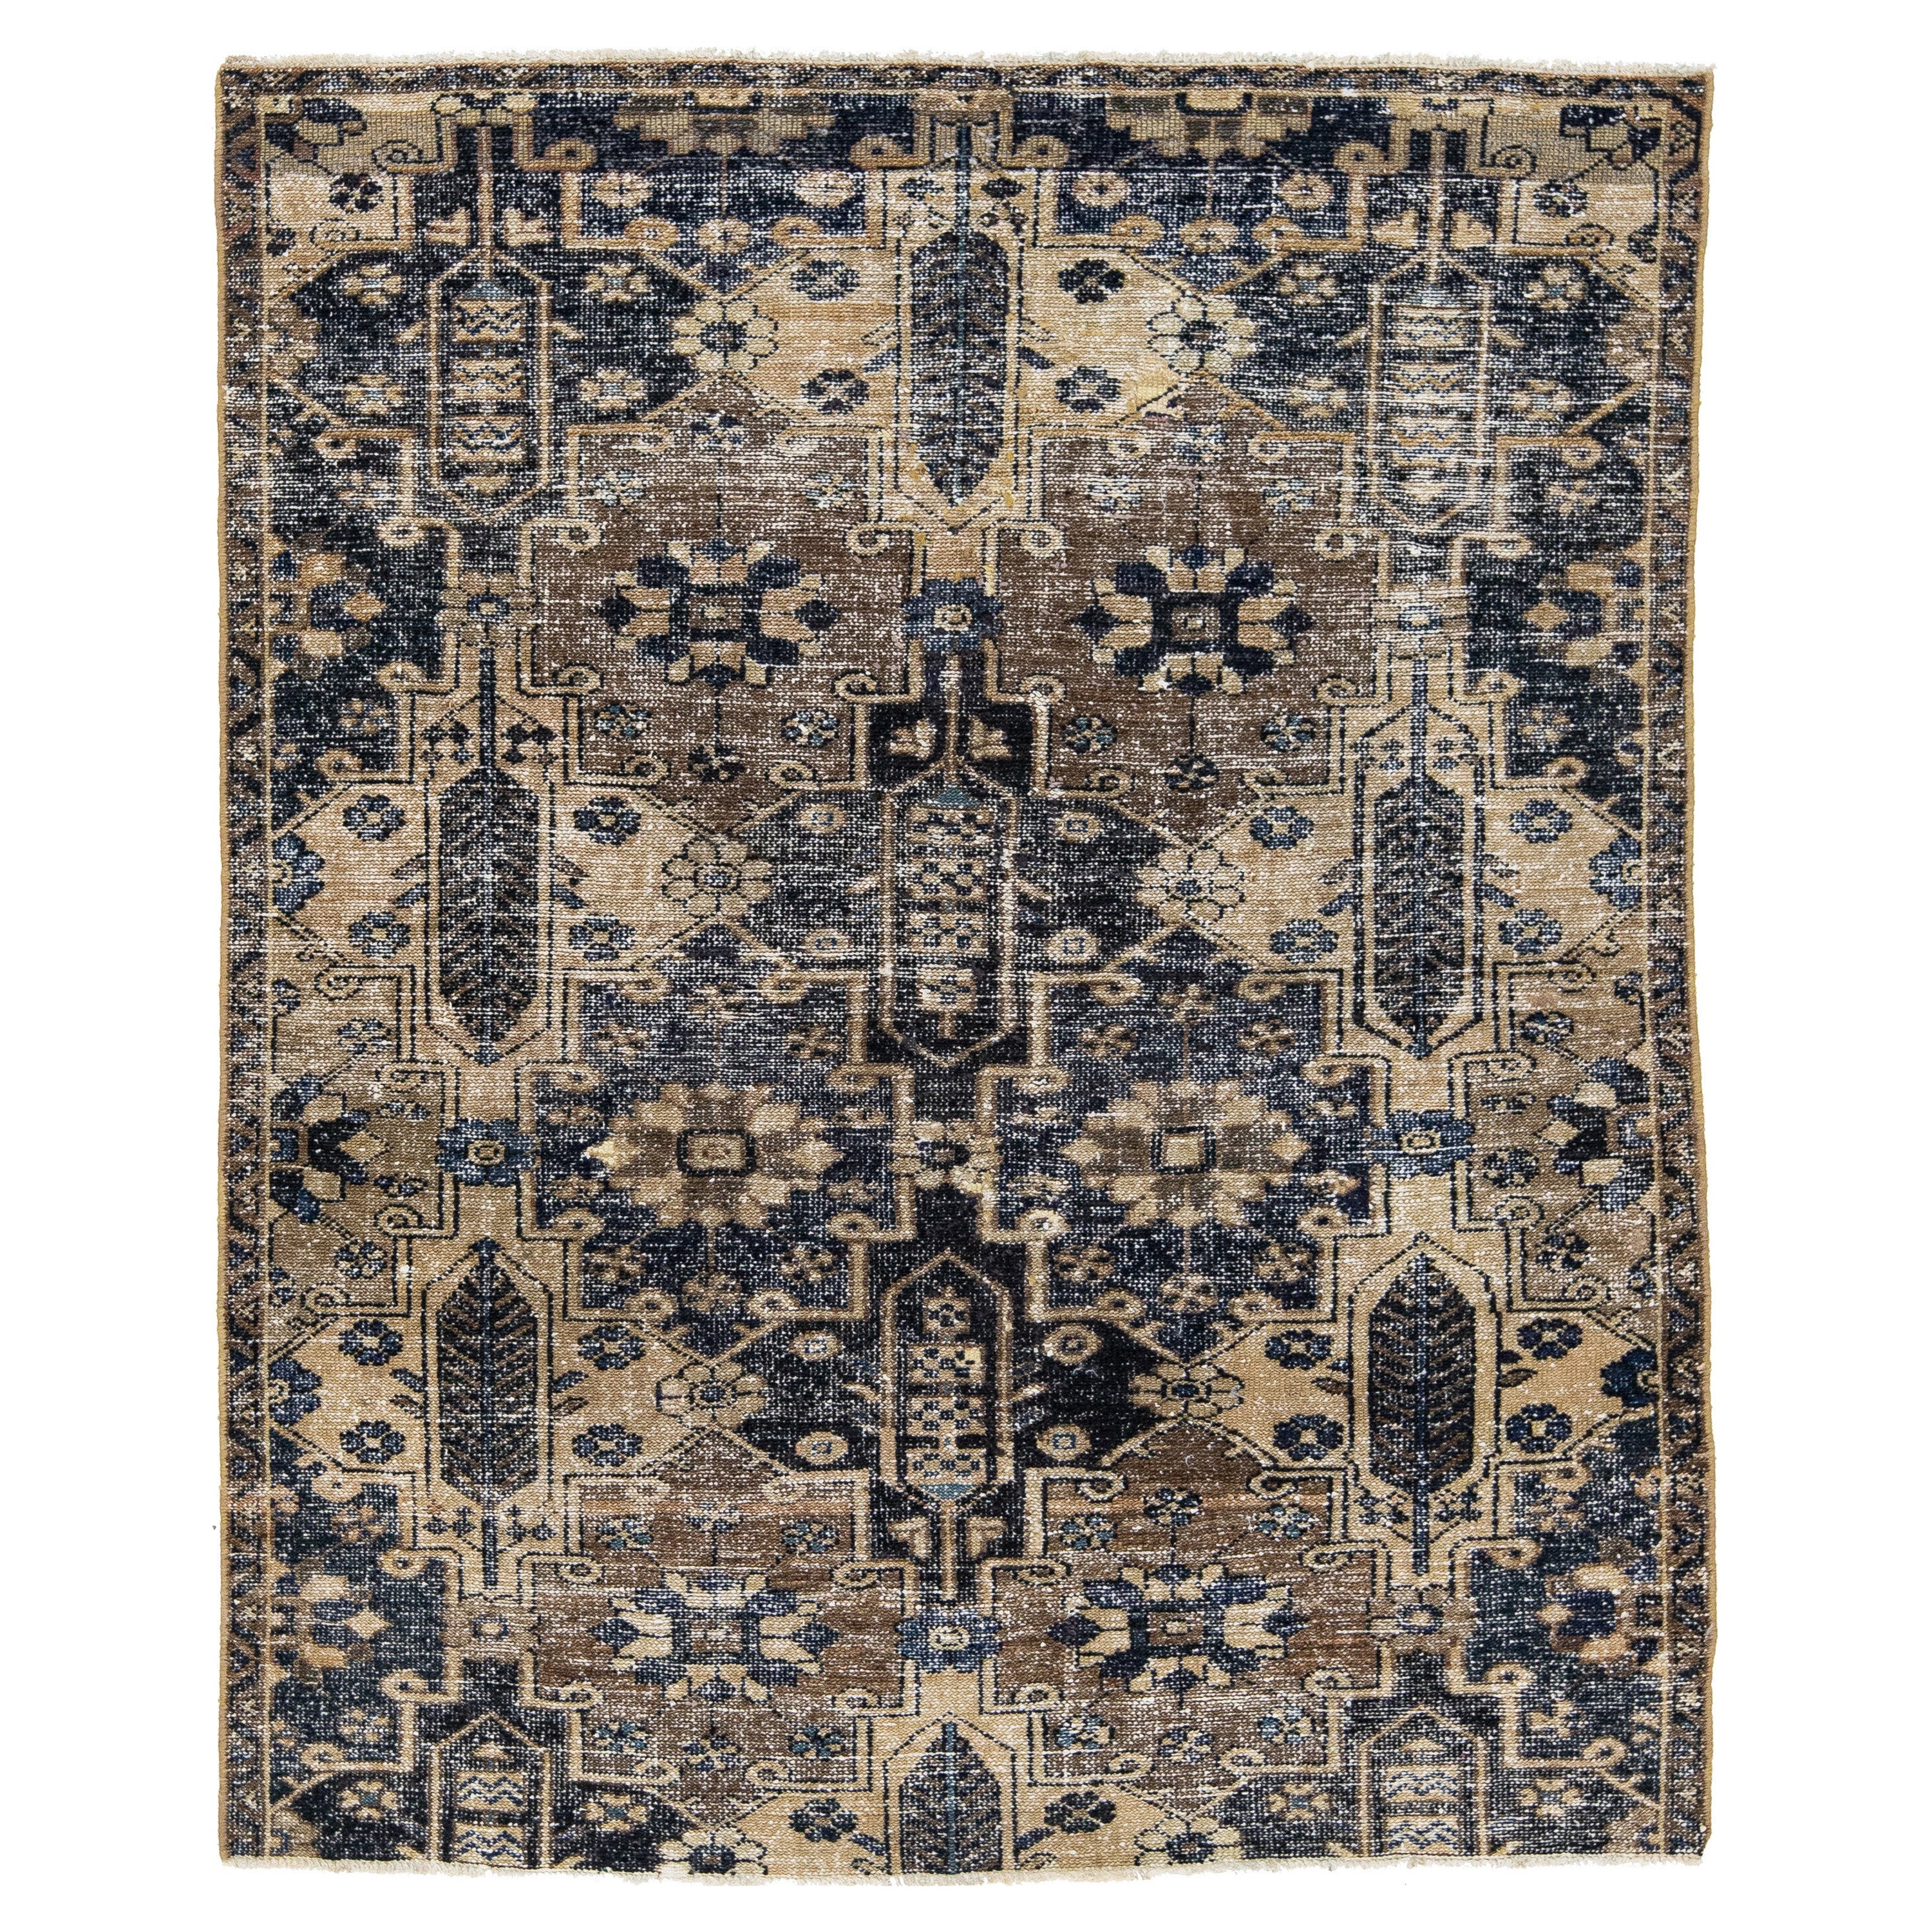 Brown Vintage Persian Distressed Wool Rug With Geometric Pattern (Tapis de laine vieillie à motifs géométriques) 